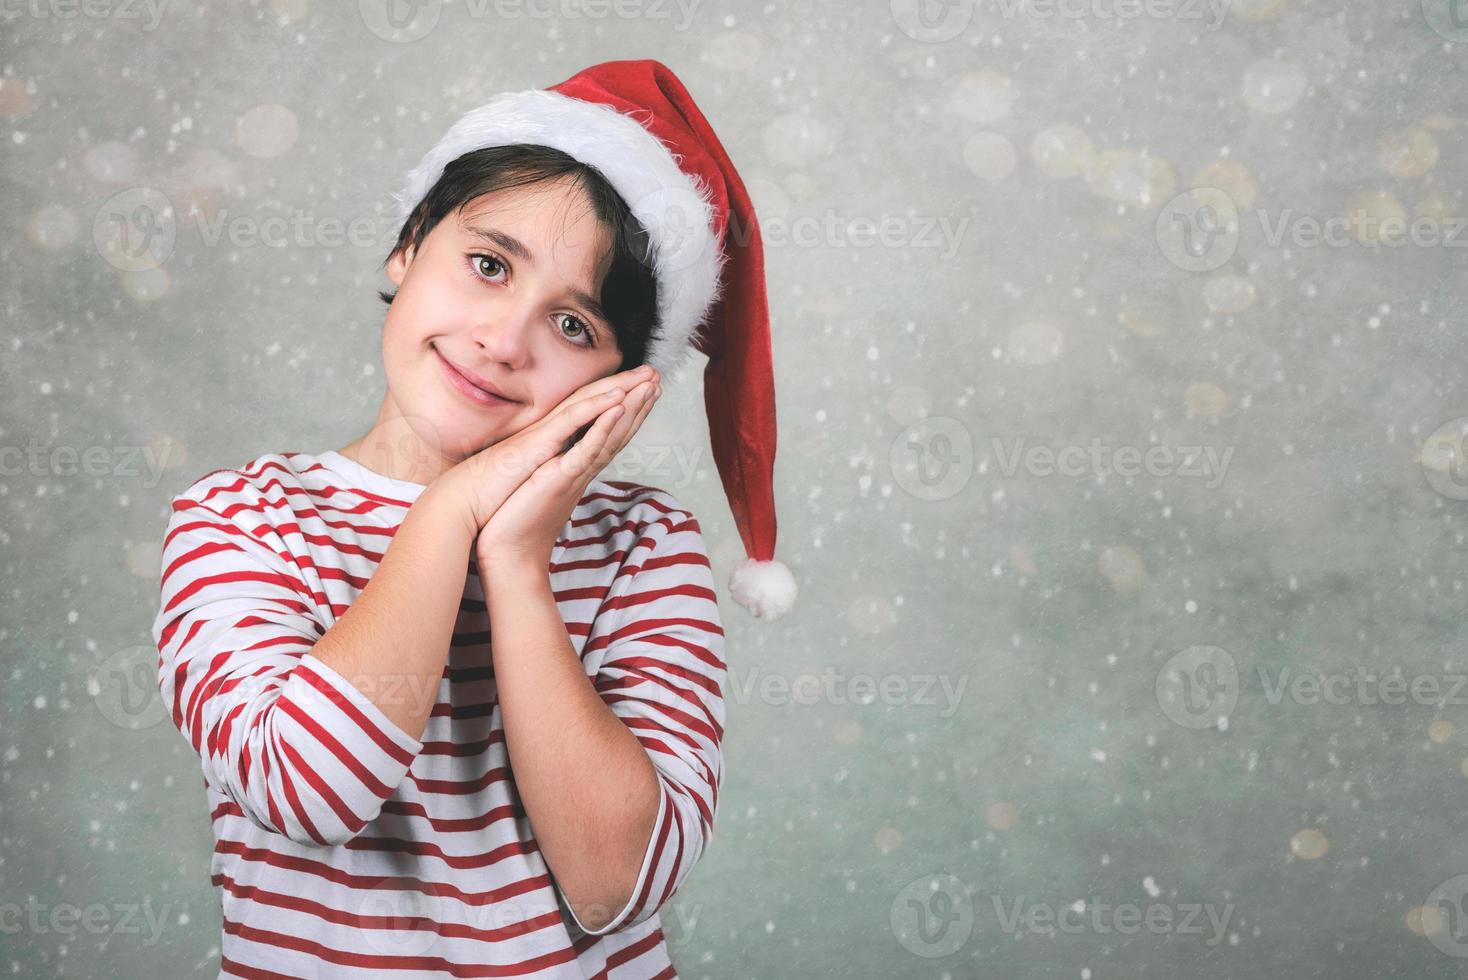 feliz navidad, niño sonriente con sombrero de santa claus de navidad foto